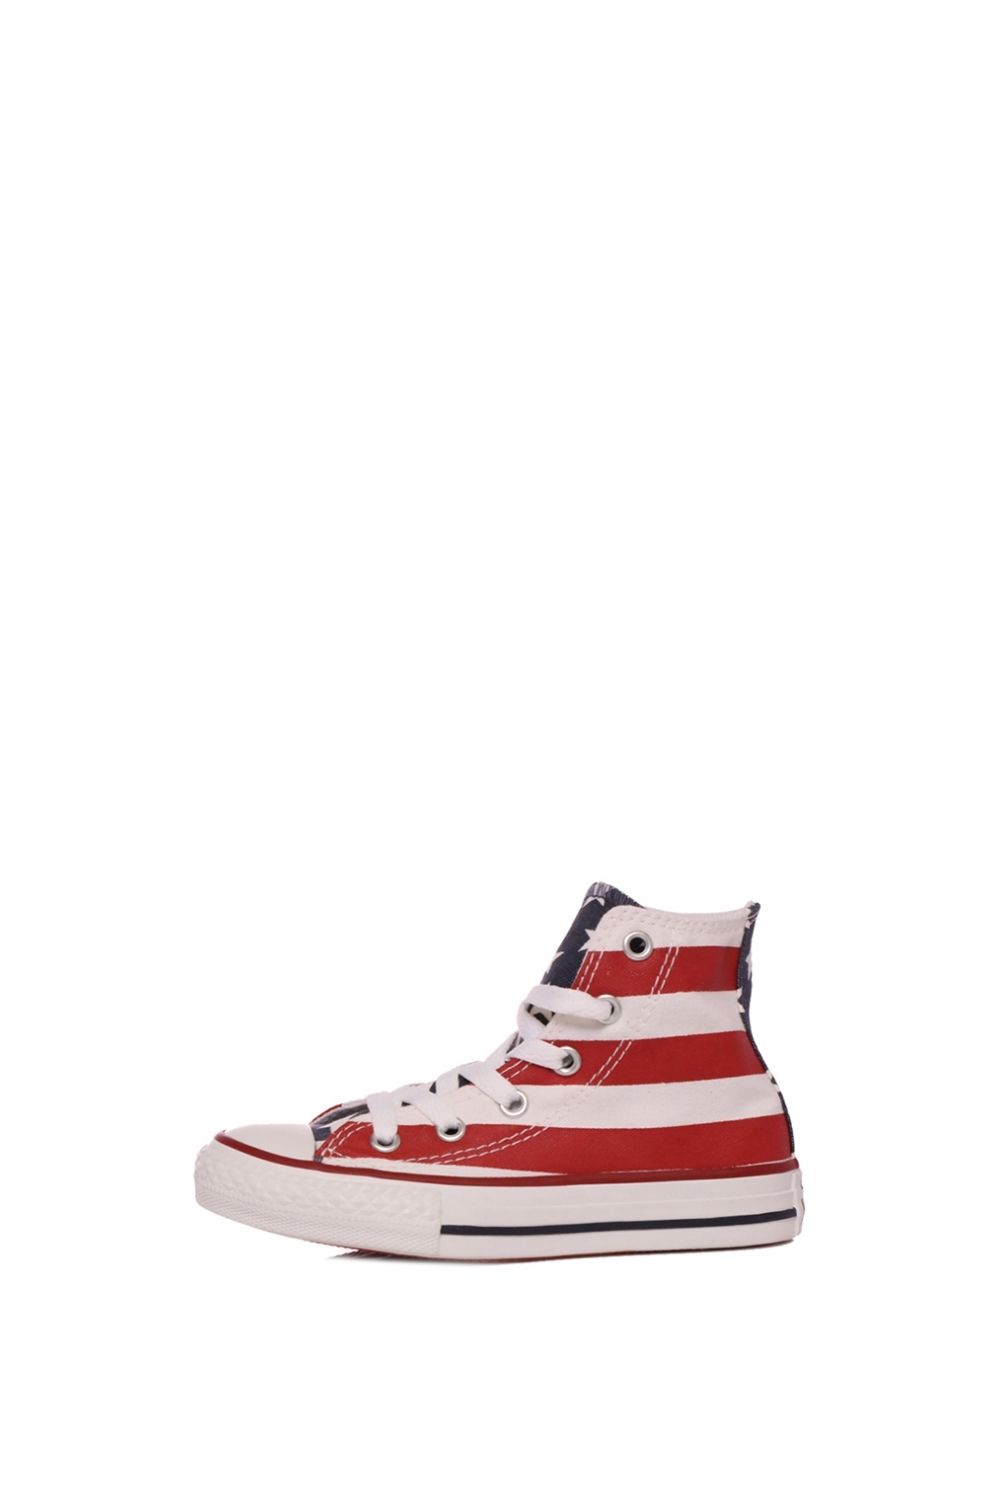 Παιδικά/Boys/Παπούτσια/Sneakers CONVERSE - Παιδικά ψηλά sneakers Chuck Taylor All Star Hi λευκά κόκκινα